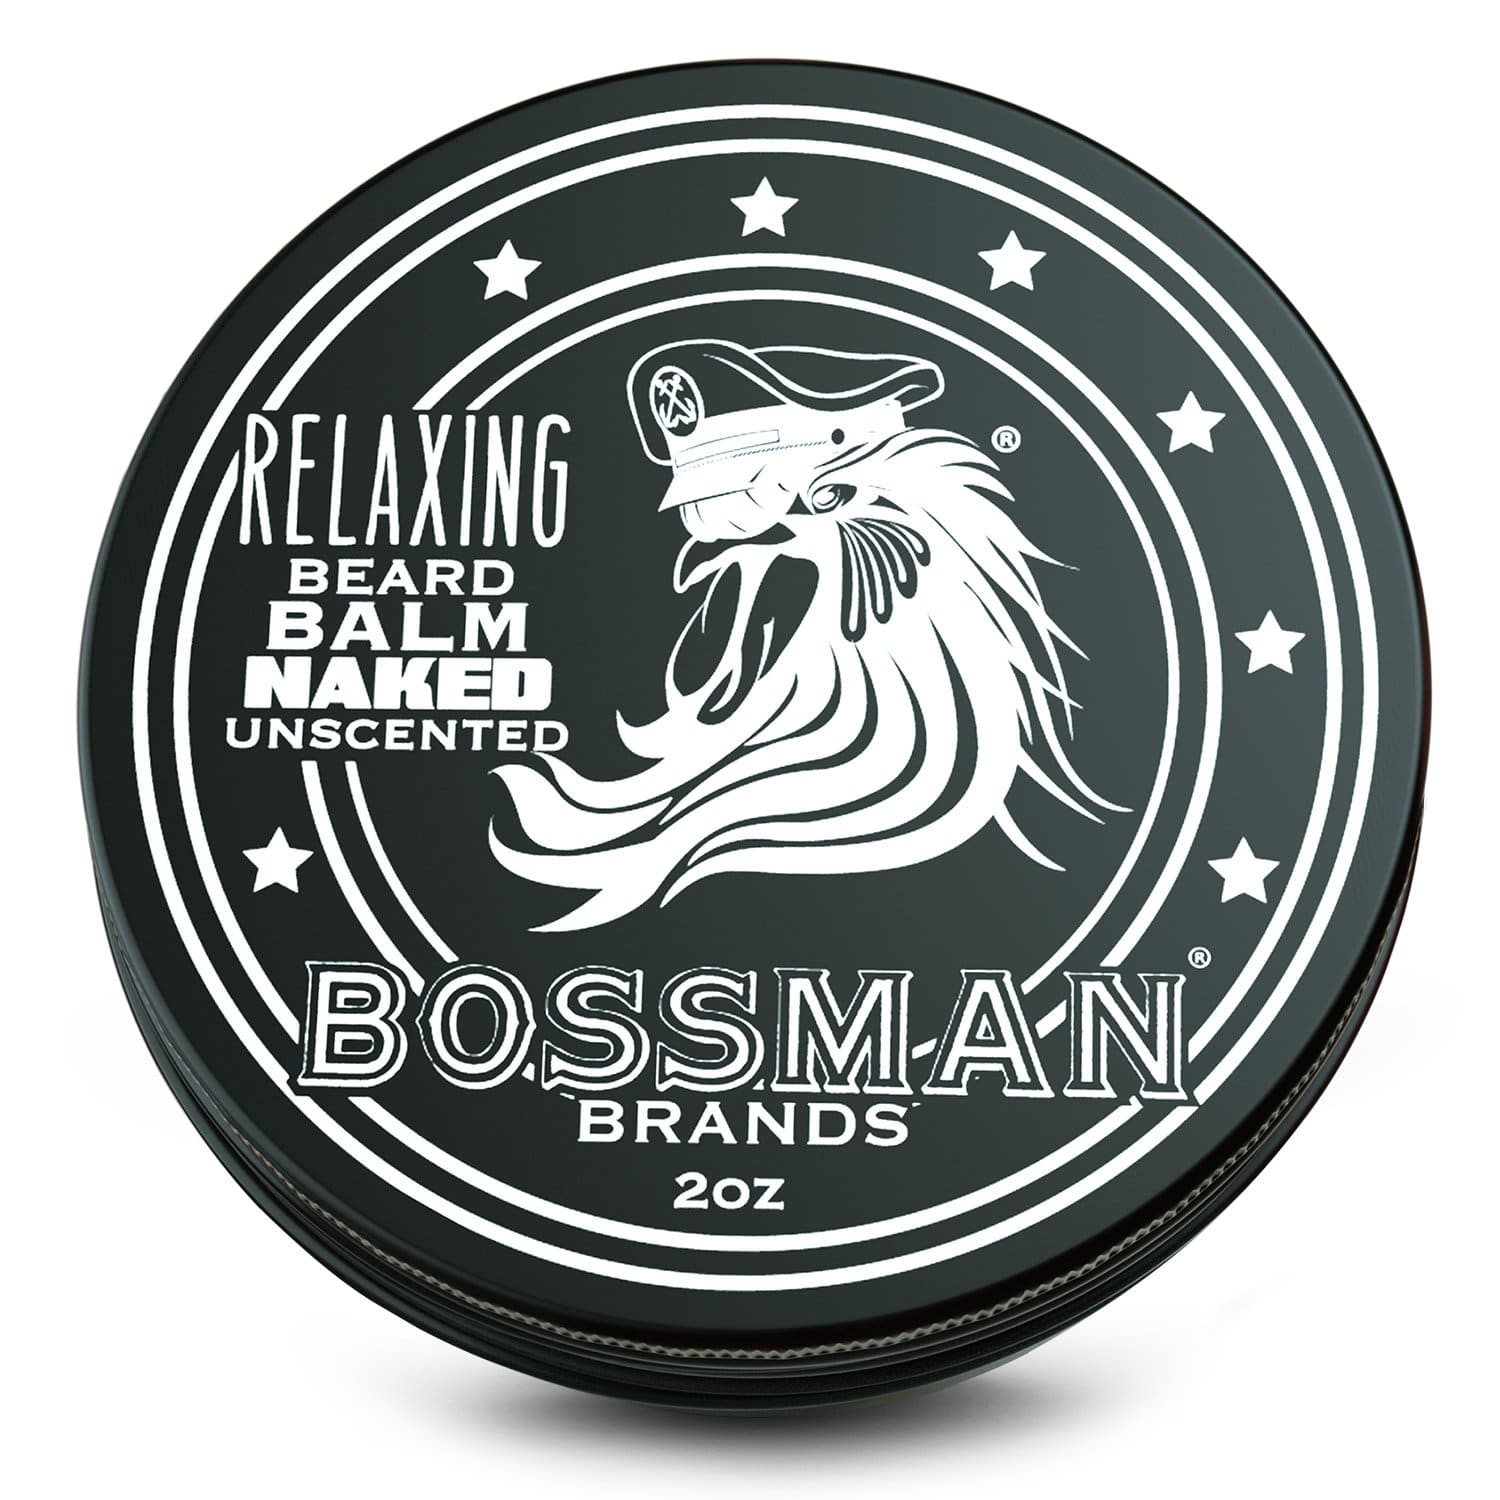 Relaxing Beard Balm Bossman Brands